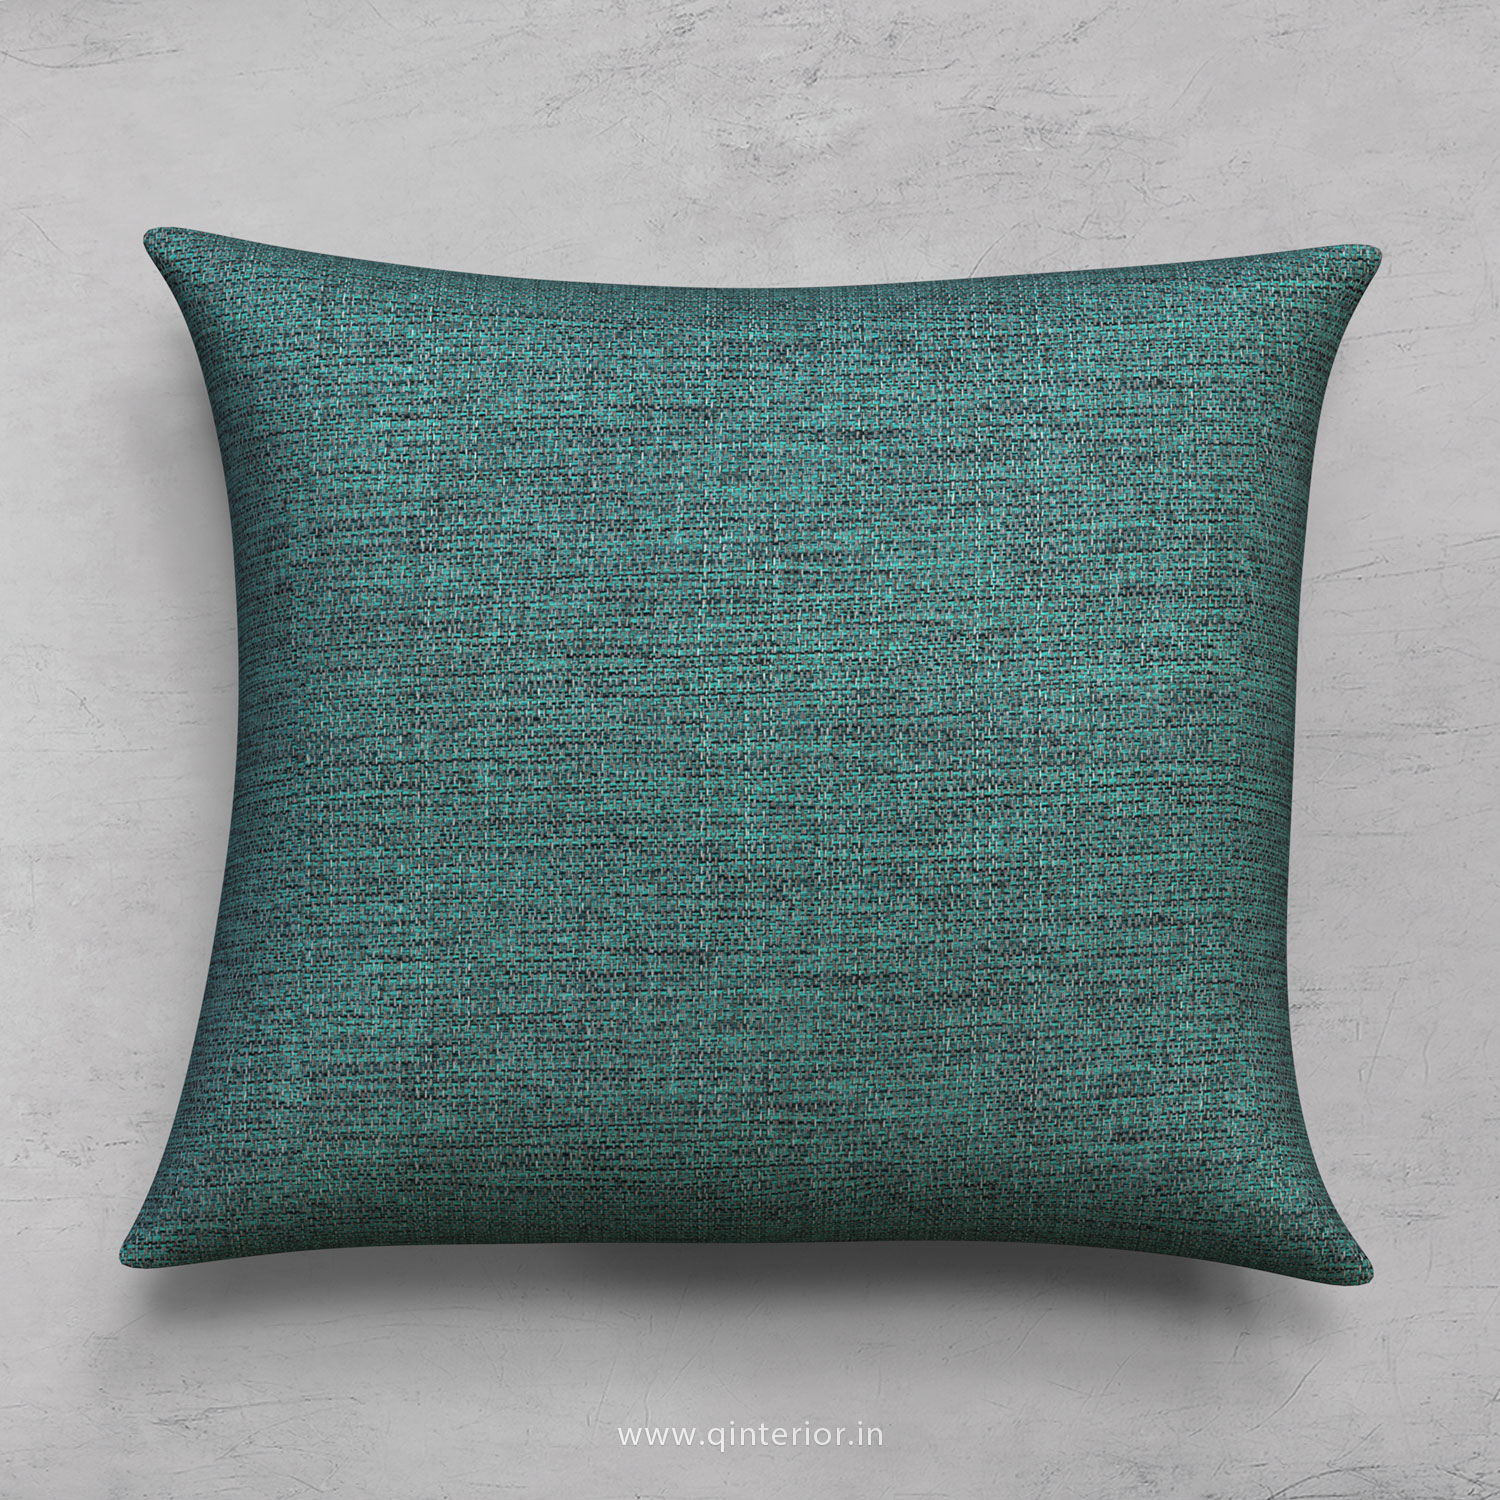 Cushion With Cushion Cover in Jacquard - CUS001 JQ23